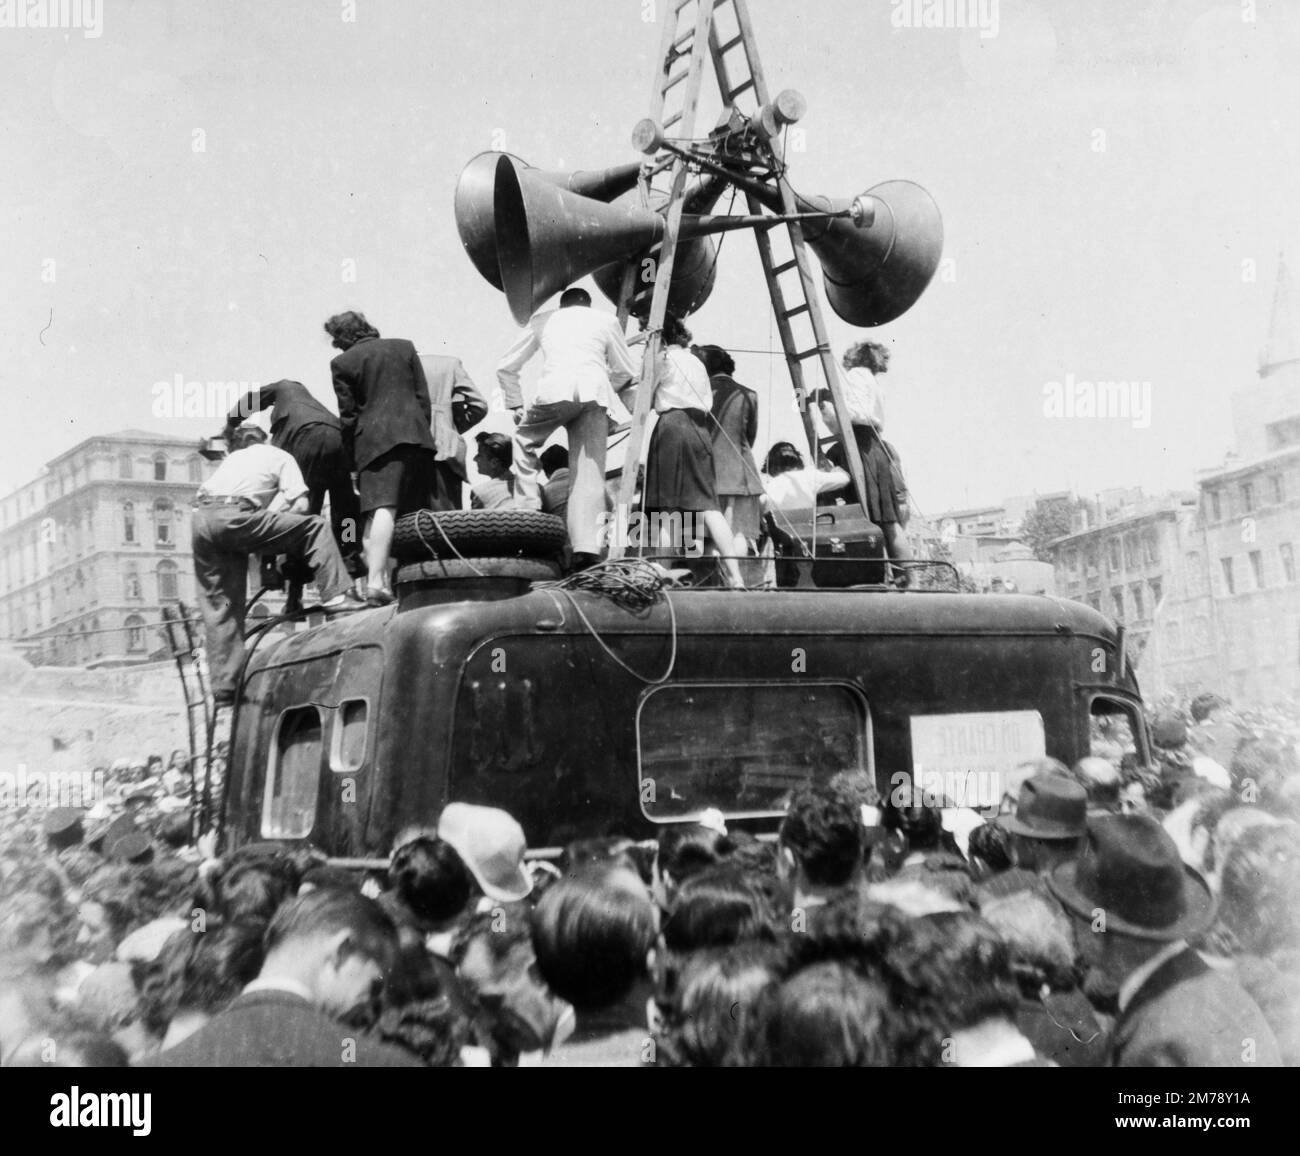 Les foules de célébration et le système de haut-parleurs sur l'avenue la Canabière dans un défilé de victoire, à Marseille, France, le lendemain de la capitulation de l'Allemagne à la fin de la Seconde Guerre mondiale, le 8 mai 1945. Image vintage noir et blanc ou monochrome photographiée le 9 mai 1945. Banque D'Images